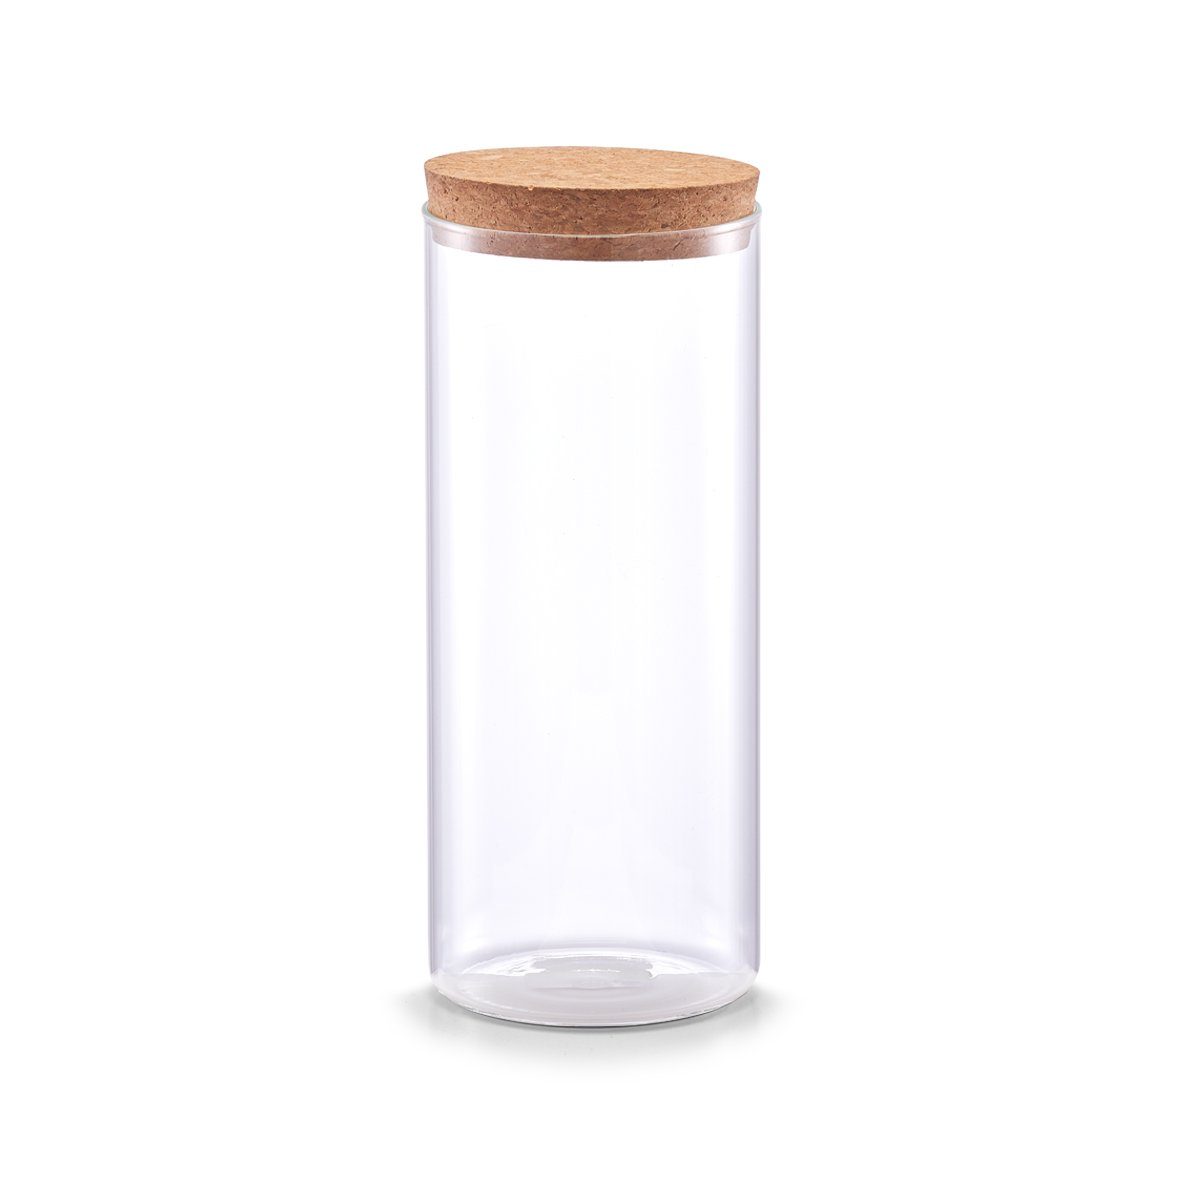 Zeller Present Vorratsglas Vorratsglas m. Korkdeckel, Glas/Kork, 1400 ml, Glas/Kork, transparent, 1300 ml, Ø9,5 x 23,5 cm